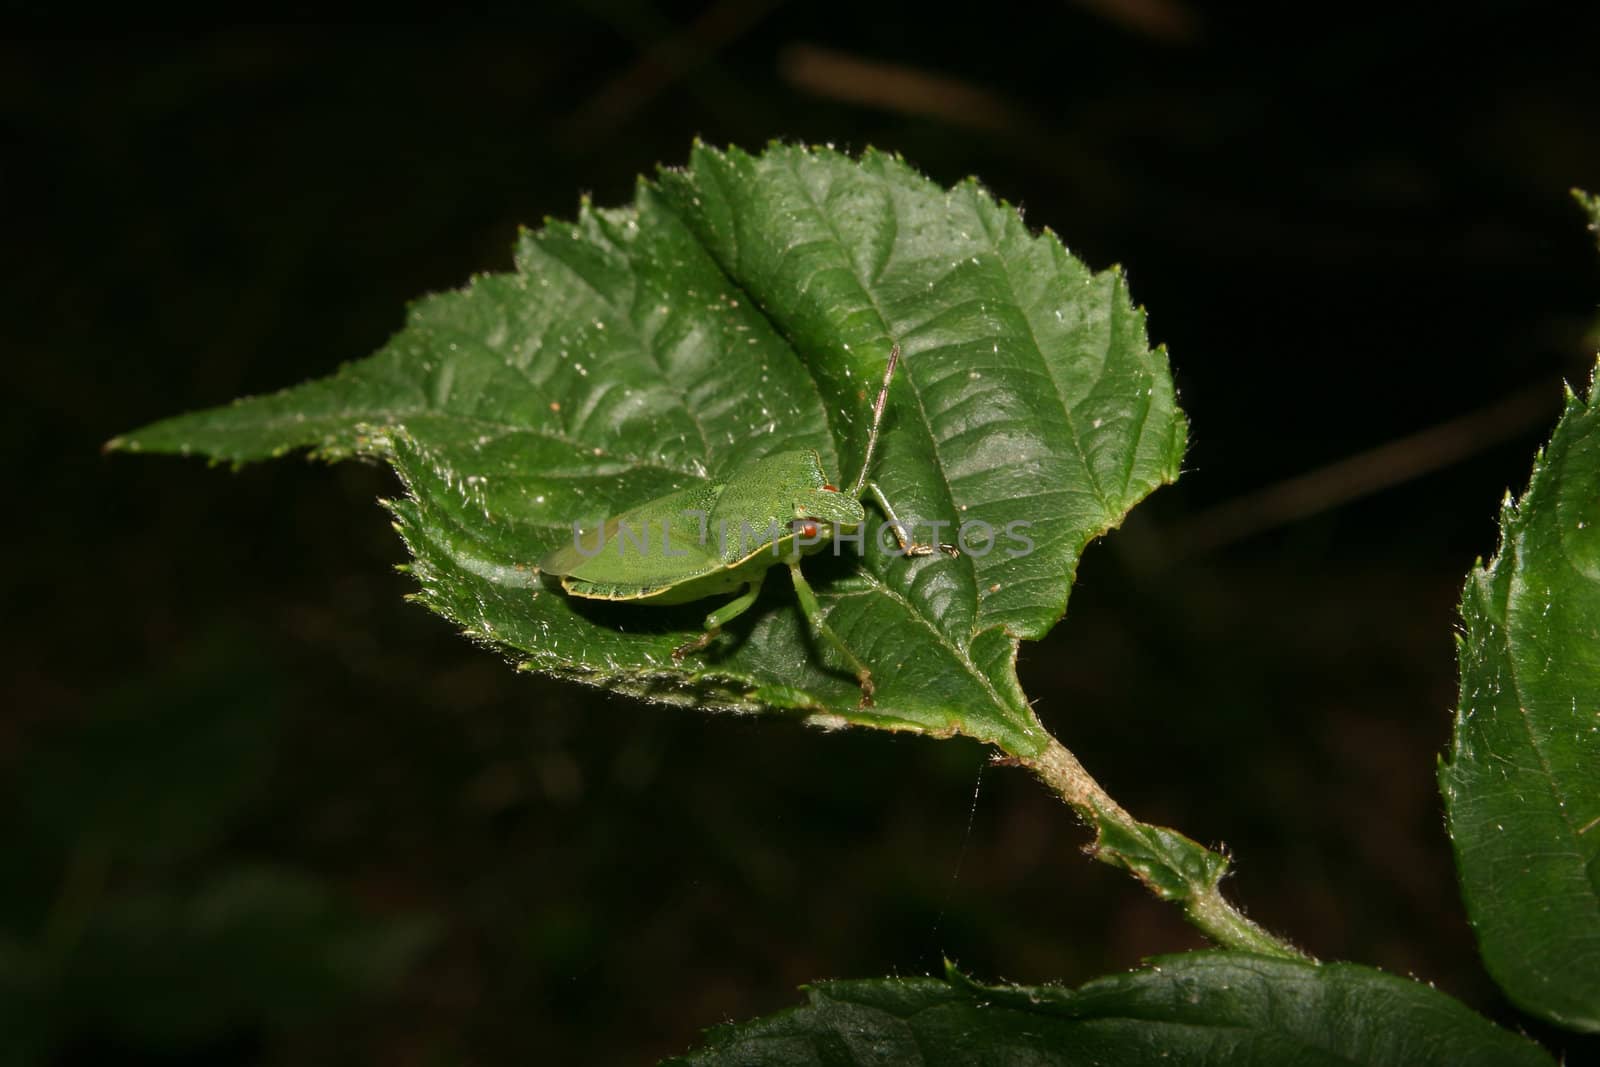 Green shield bug (Palomena prasina) by tdietrich